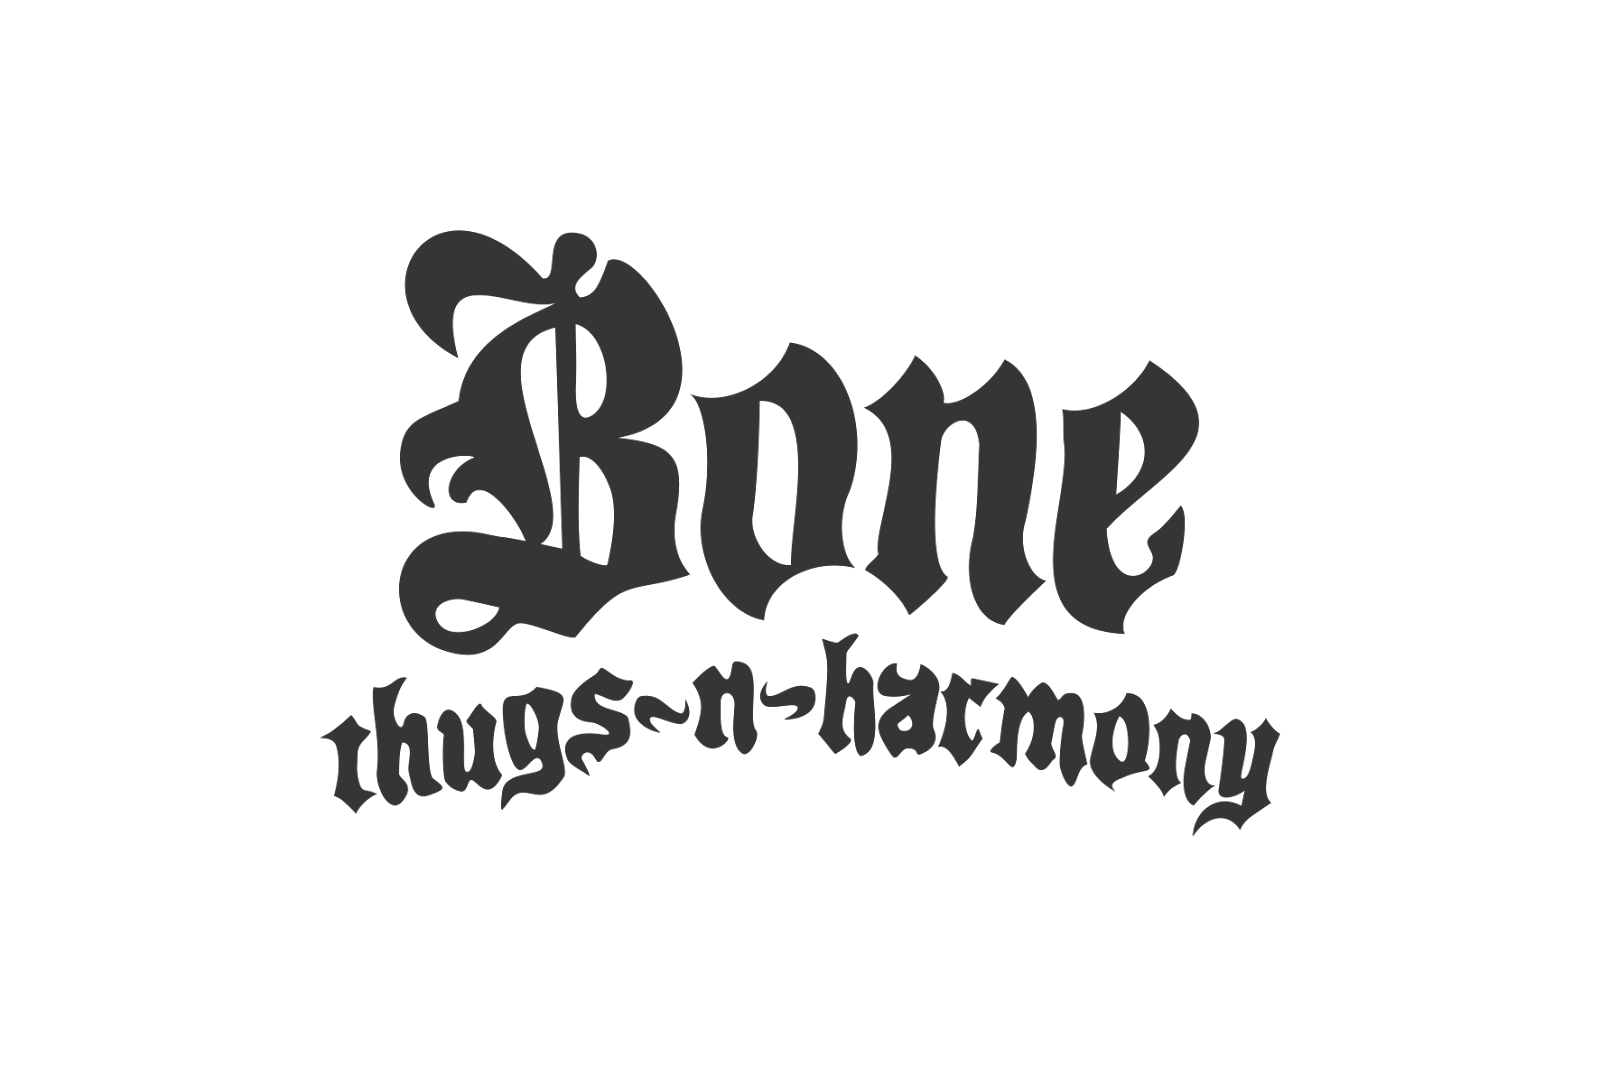 Bone Thugs-n-Harmony. Bone Thugs n Harmony logo. Bone Thugs -n - Harmony Rapper. Bones лого. Bone thugs harmony